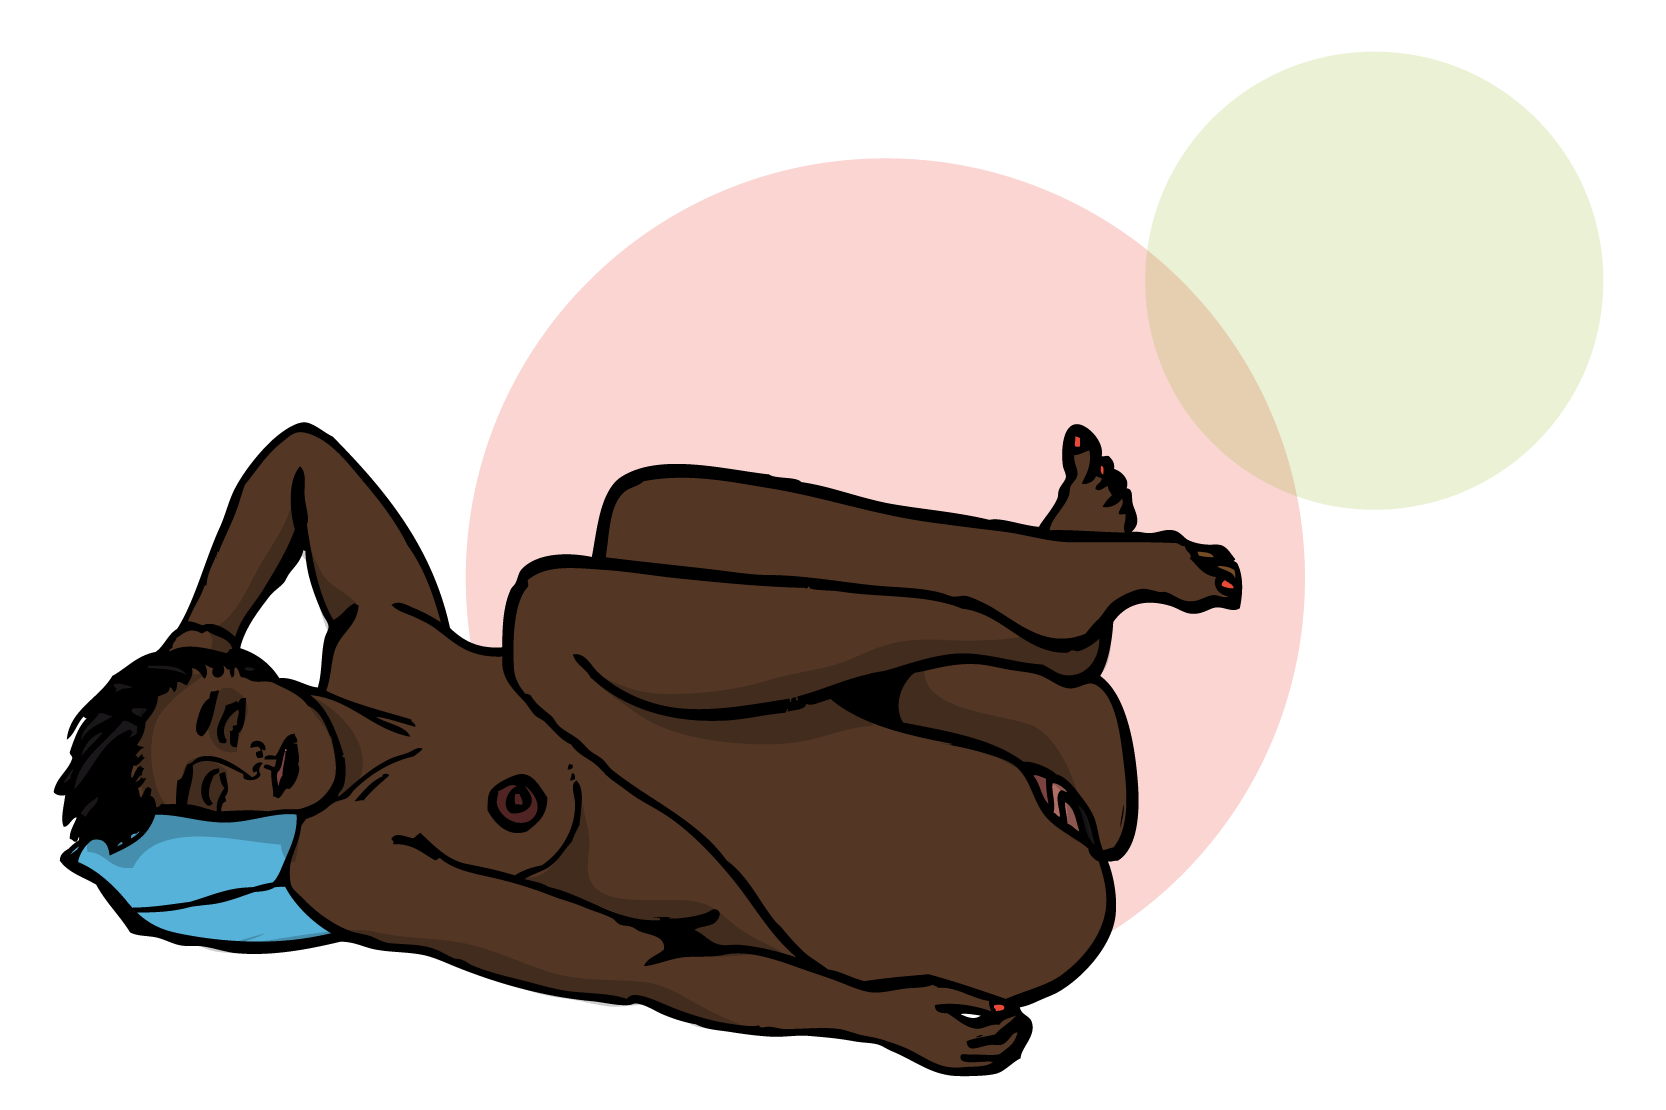 En naken person ligger på rygg med ihopkurade ben. Illustration.